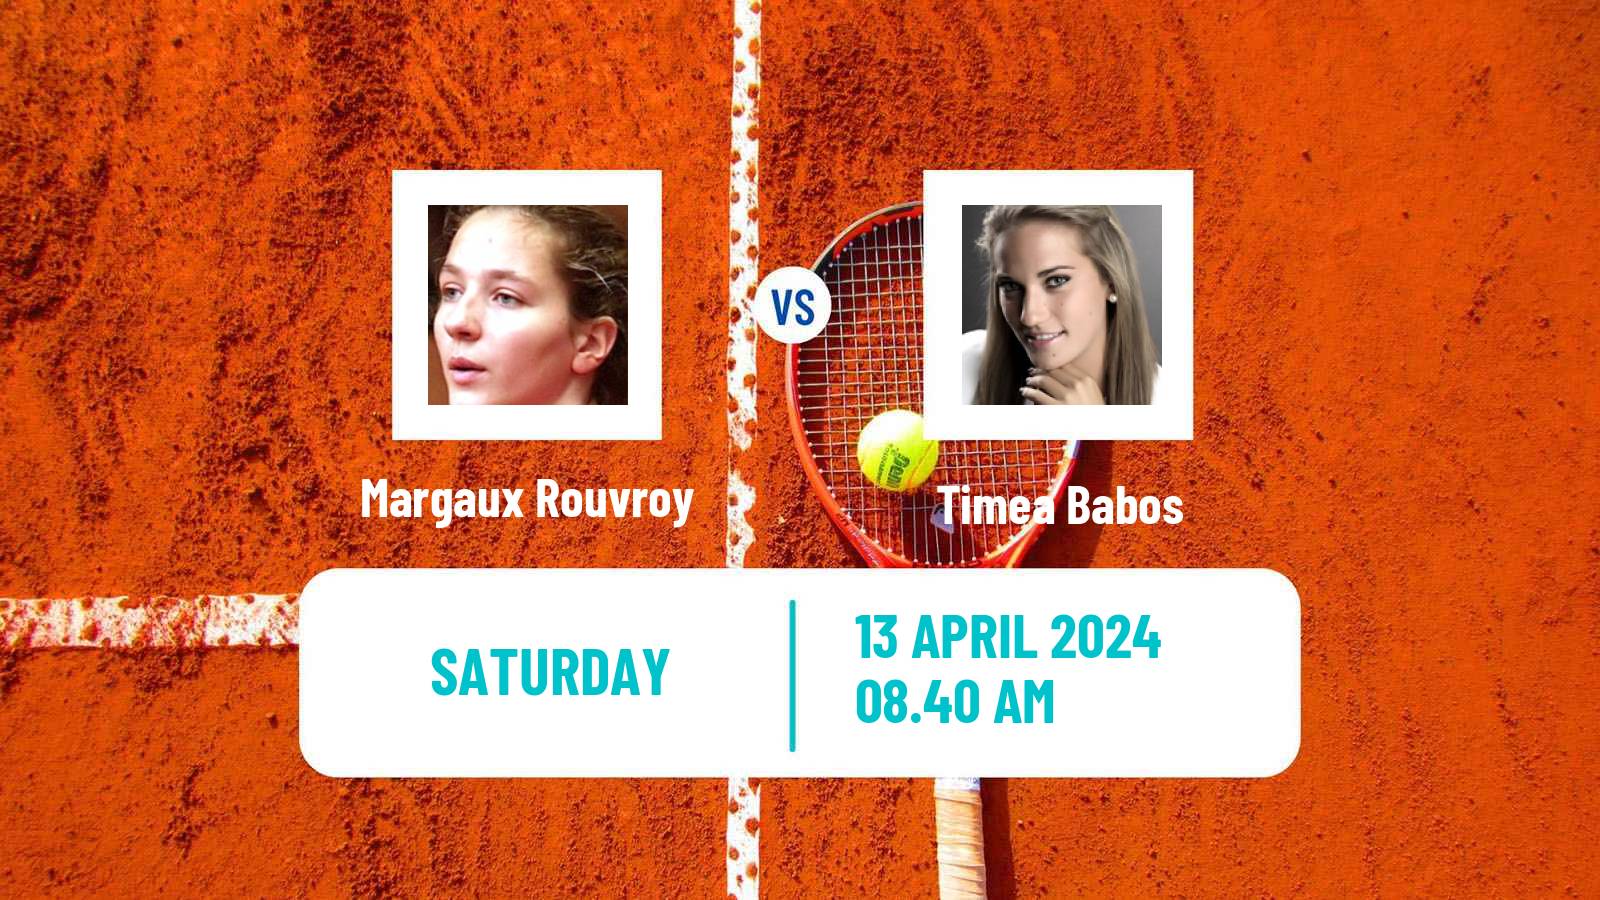 Tennis WTA Rouen Margaux Rouvroy - Timea Babos